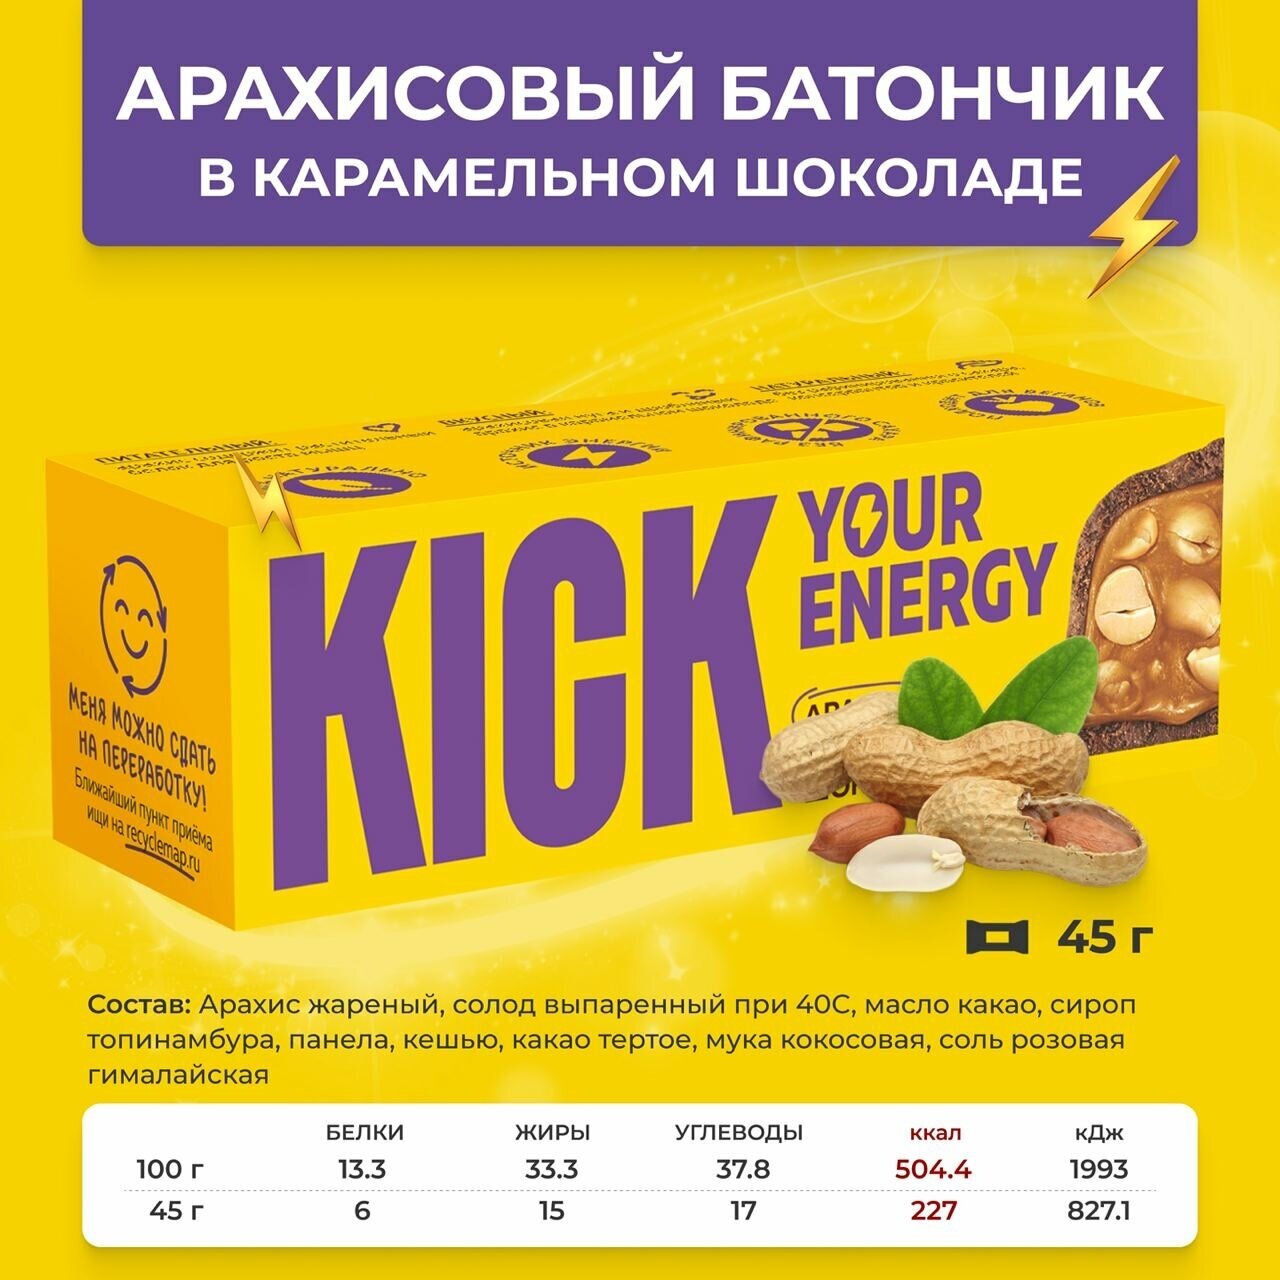 Шоколадные батончики без сахара, KICK YOUR ENERGY, ассорти 26, 10шт по 45г.